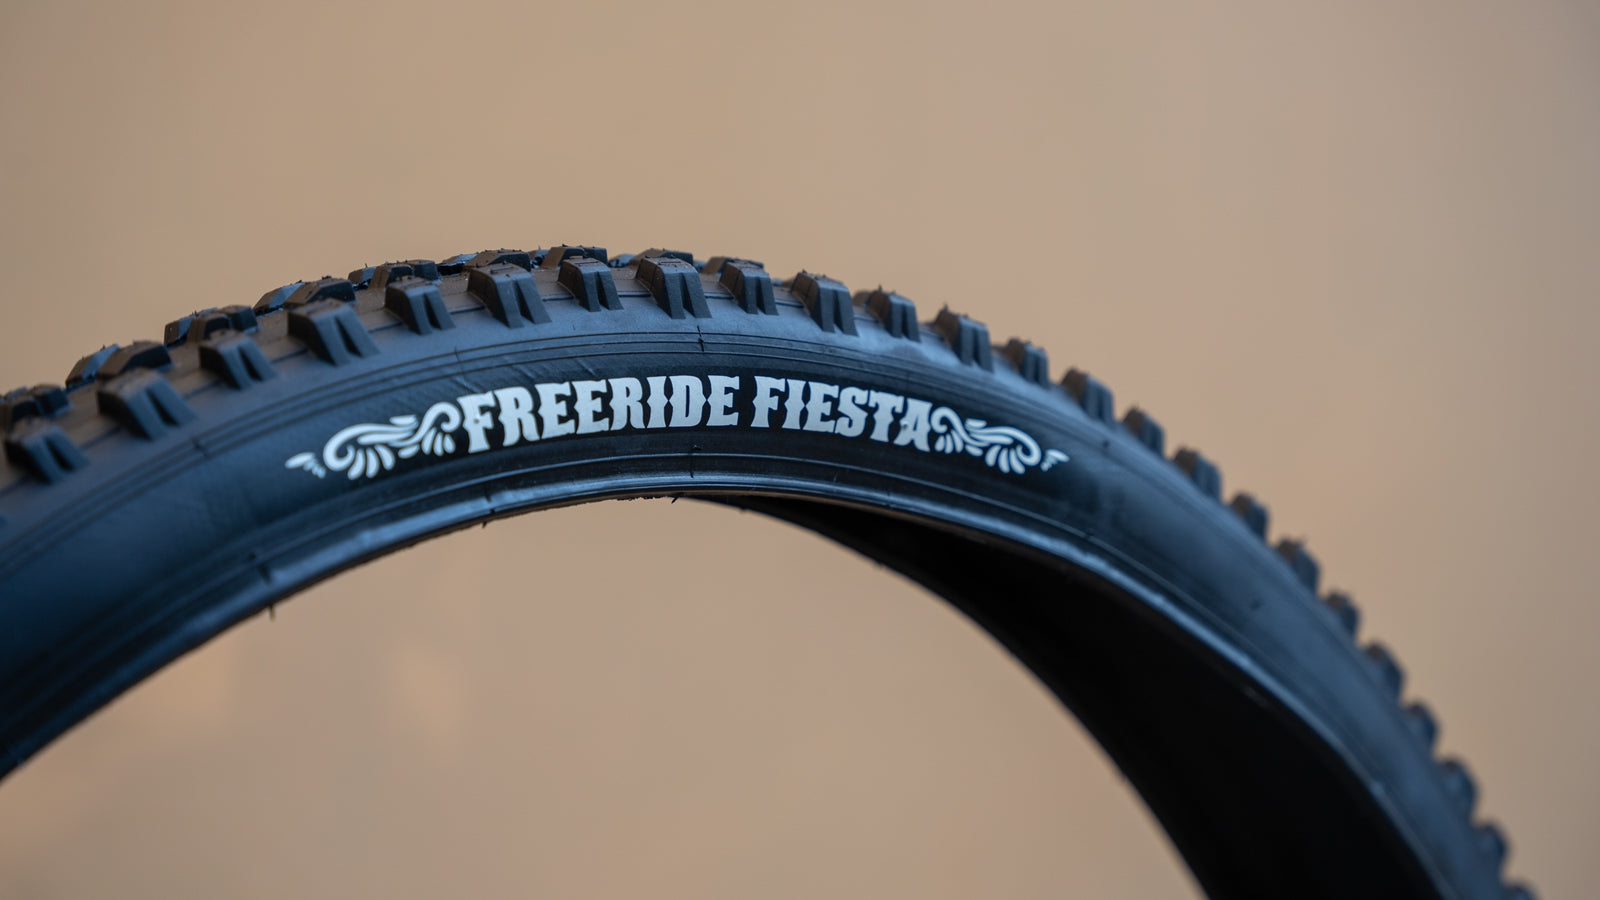 Llanta Vee Tire Freeride Fiesta Snap Wce 29 x 2.35